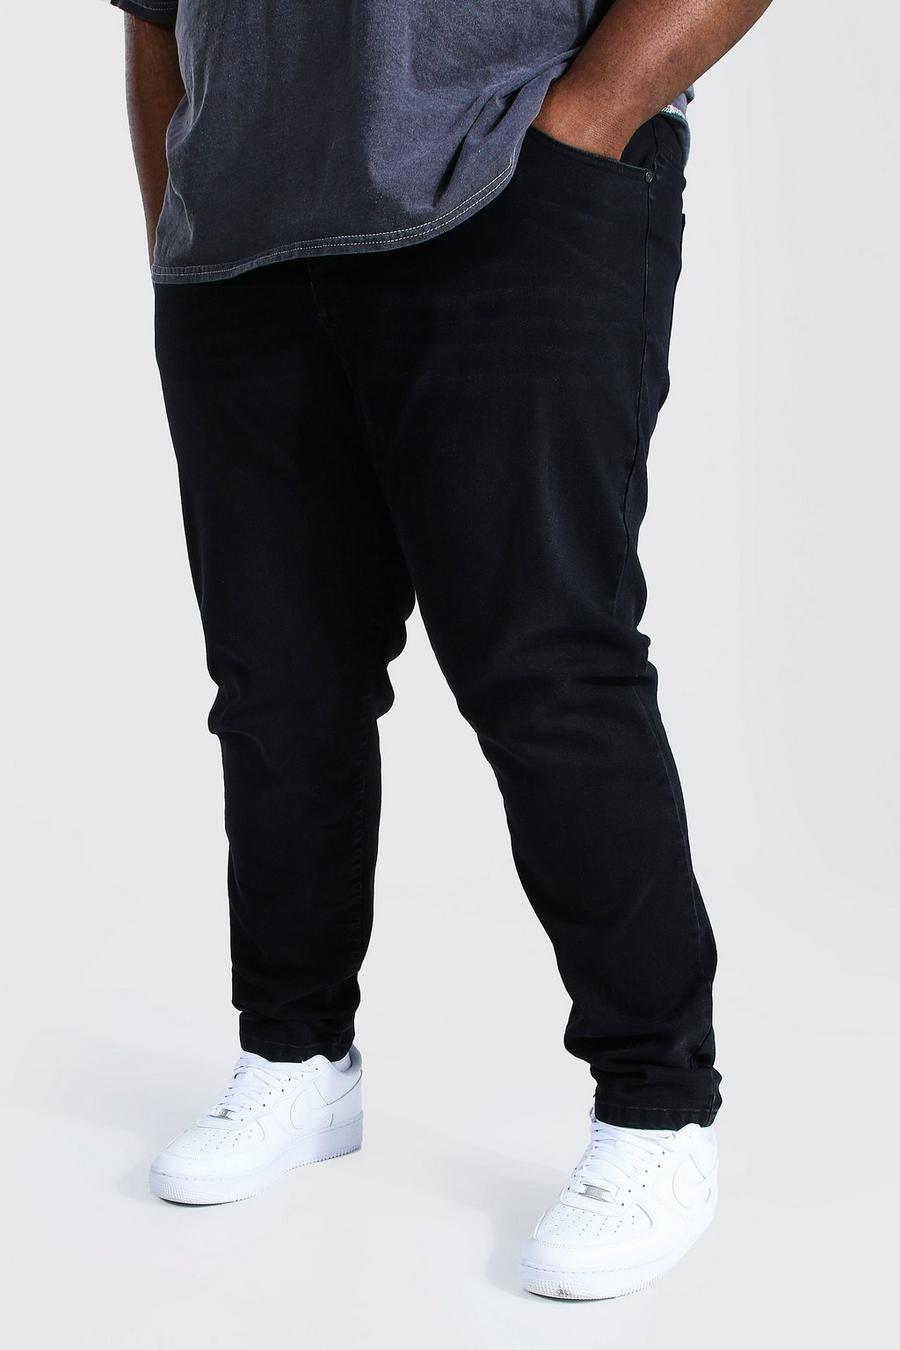 שחור דהוי ג'ינס סקיני נמתח למידות גדולות